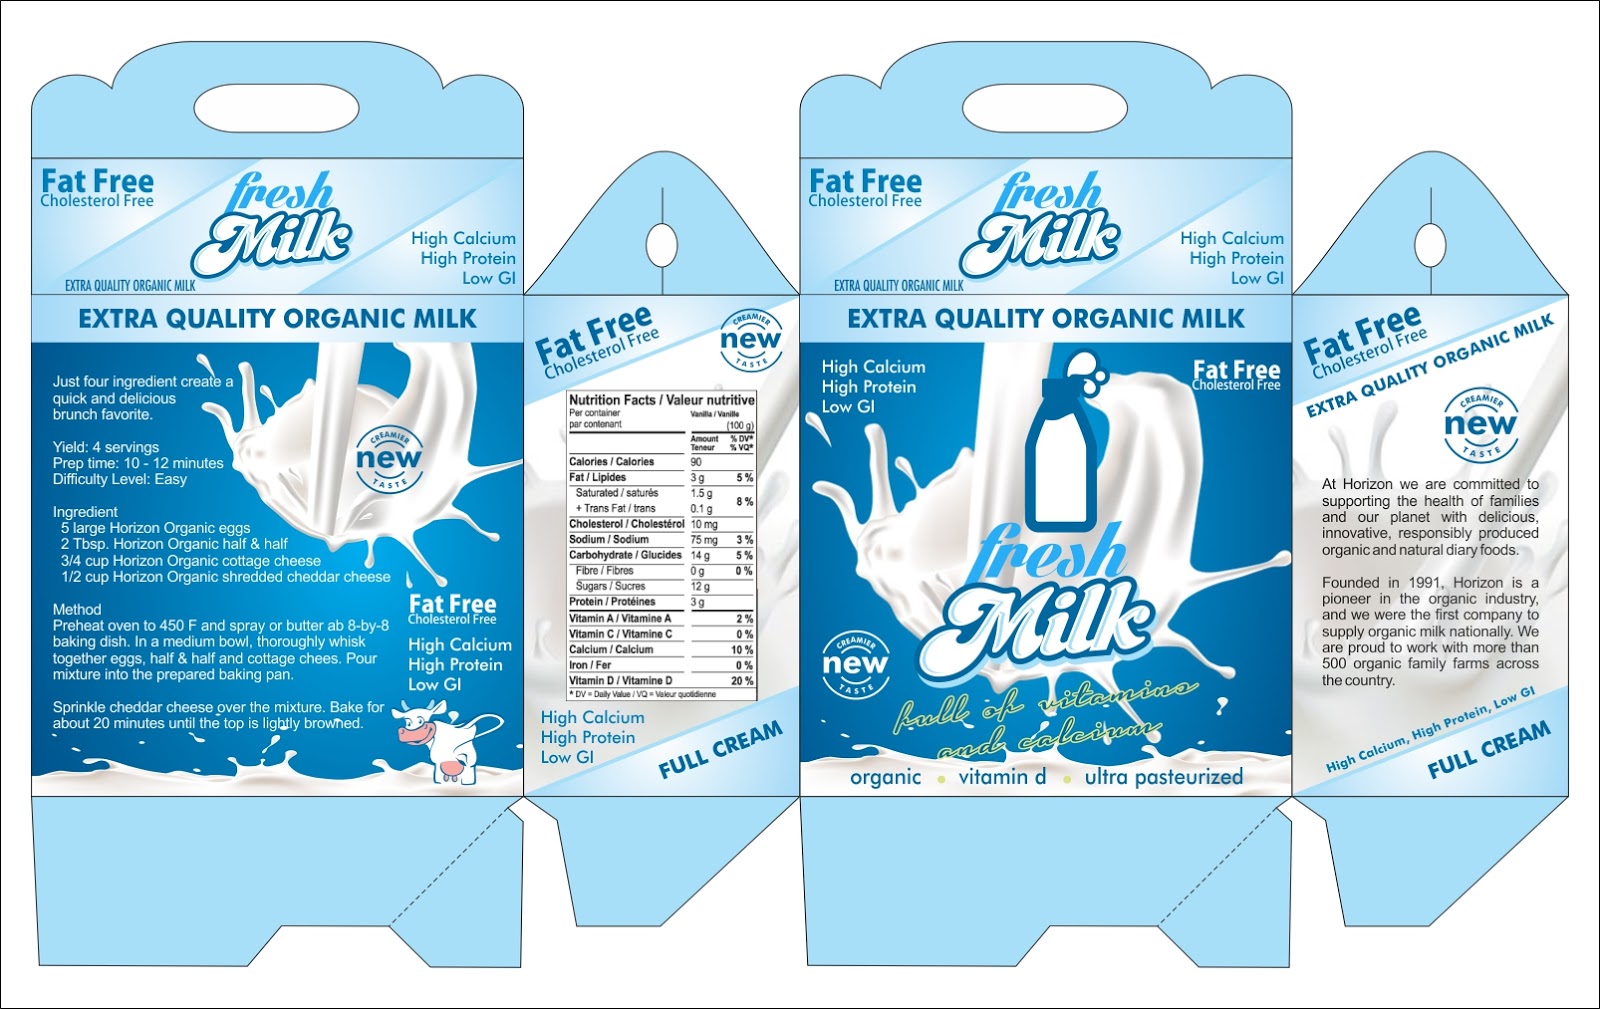 Milk Packaging Mockup 2